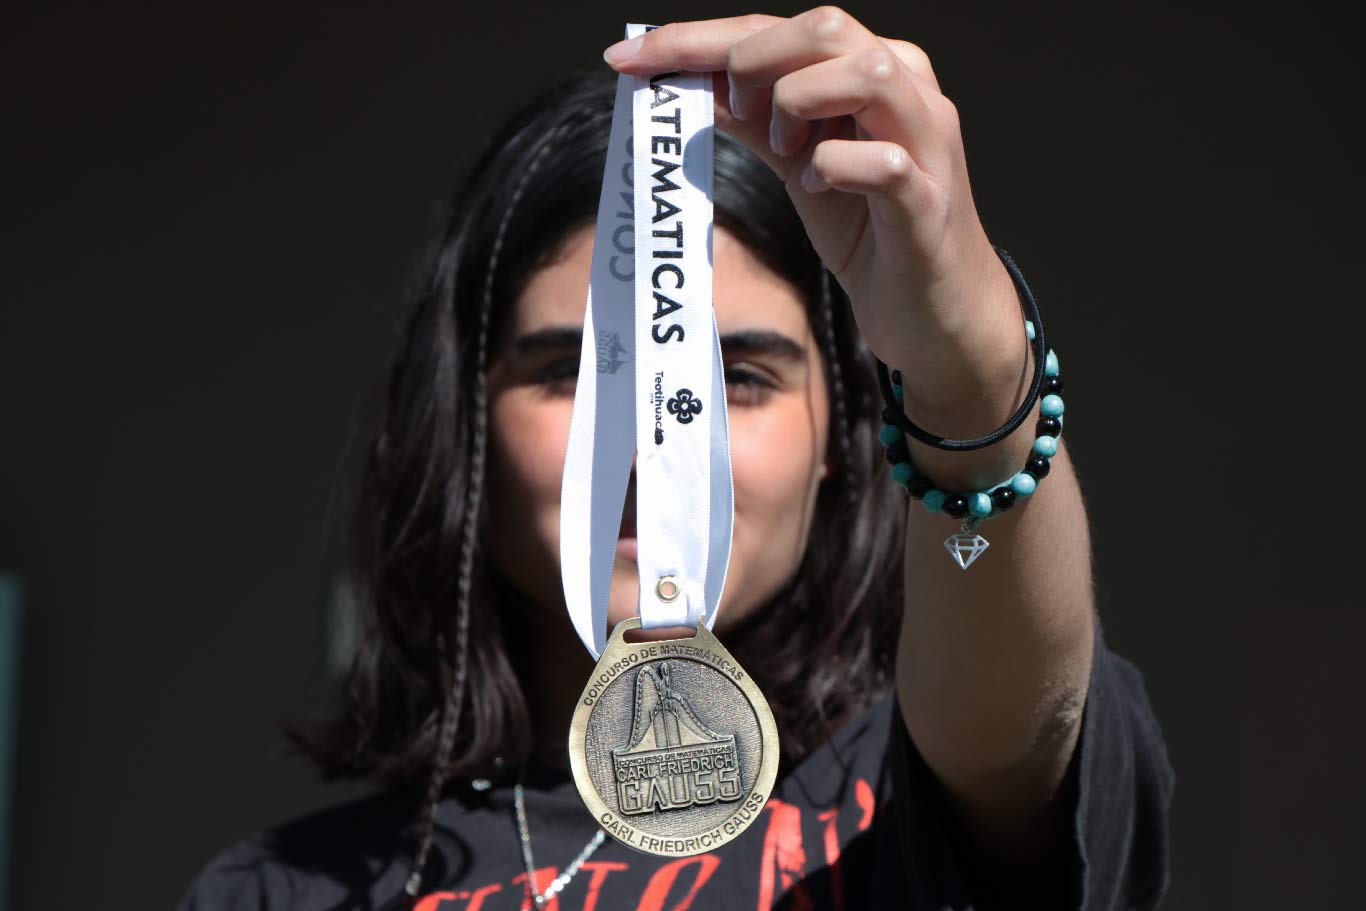 Jovenes-Zacatecanos-logran-segundo-lugar-y-mencion-honorifica-en-competencia-nacional